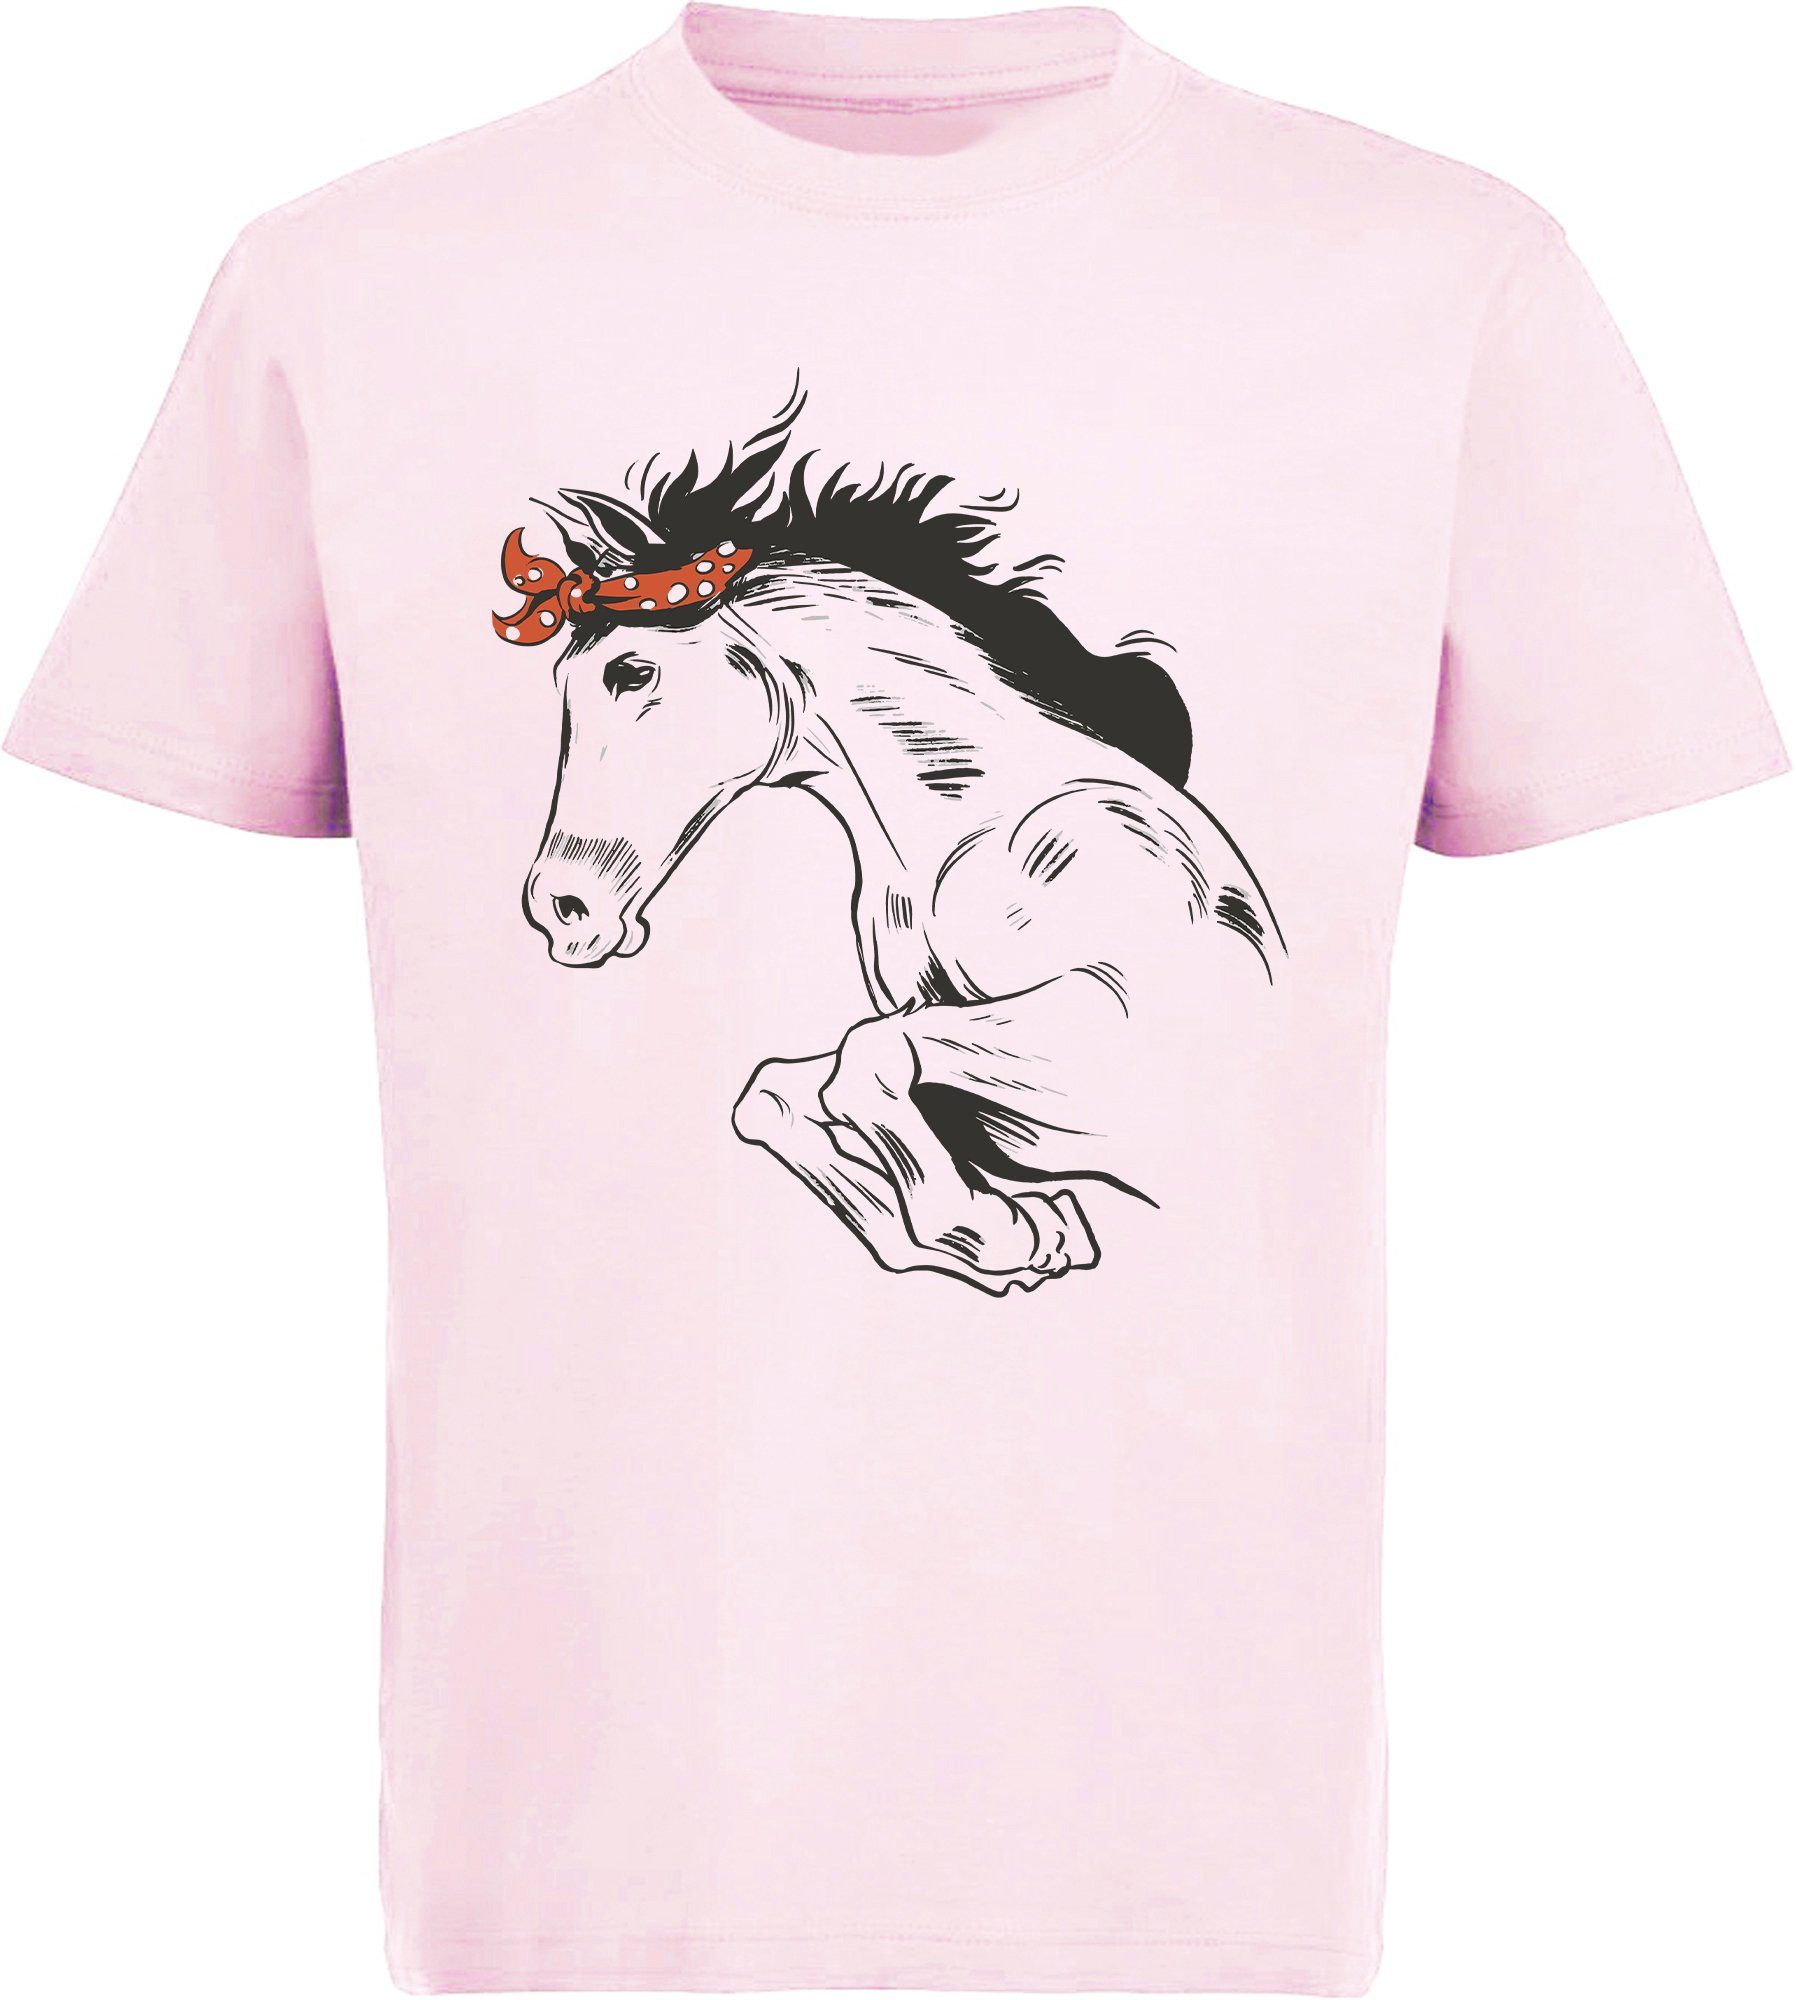 MyDesign24 Print-Shirt bedrucktes Pferde T-Shirt - Springendes Pferd mit Kopftuch Baumwollshirt mit Aufdruck, i170 rosa